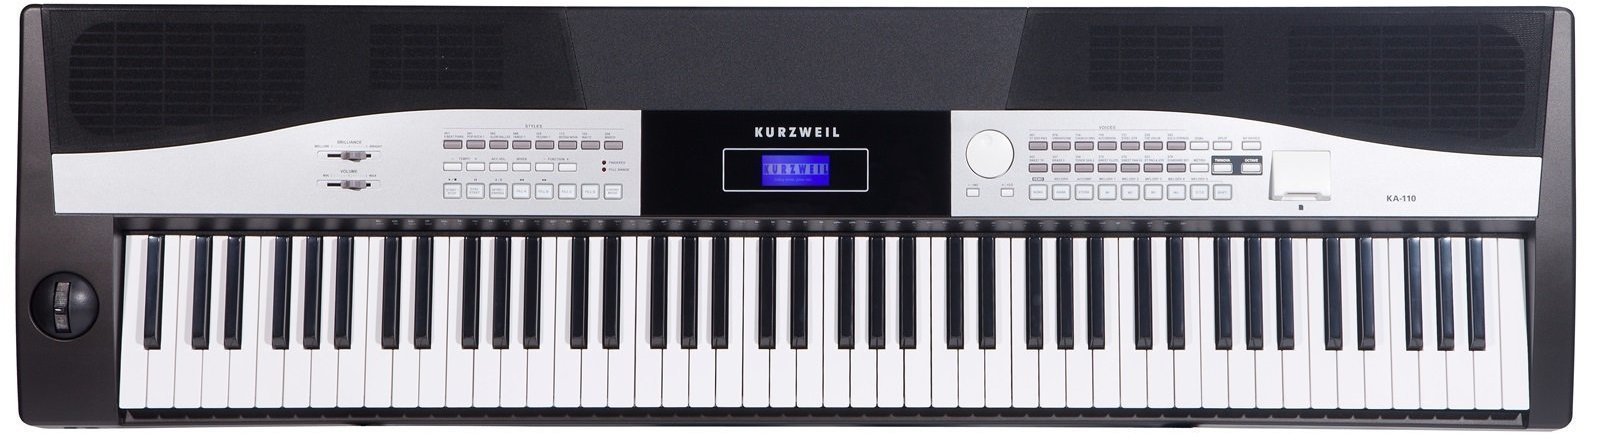 Digital Stage Piano Kurzweil KA110